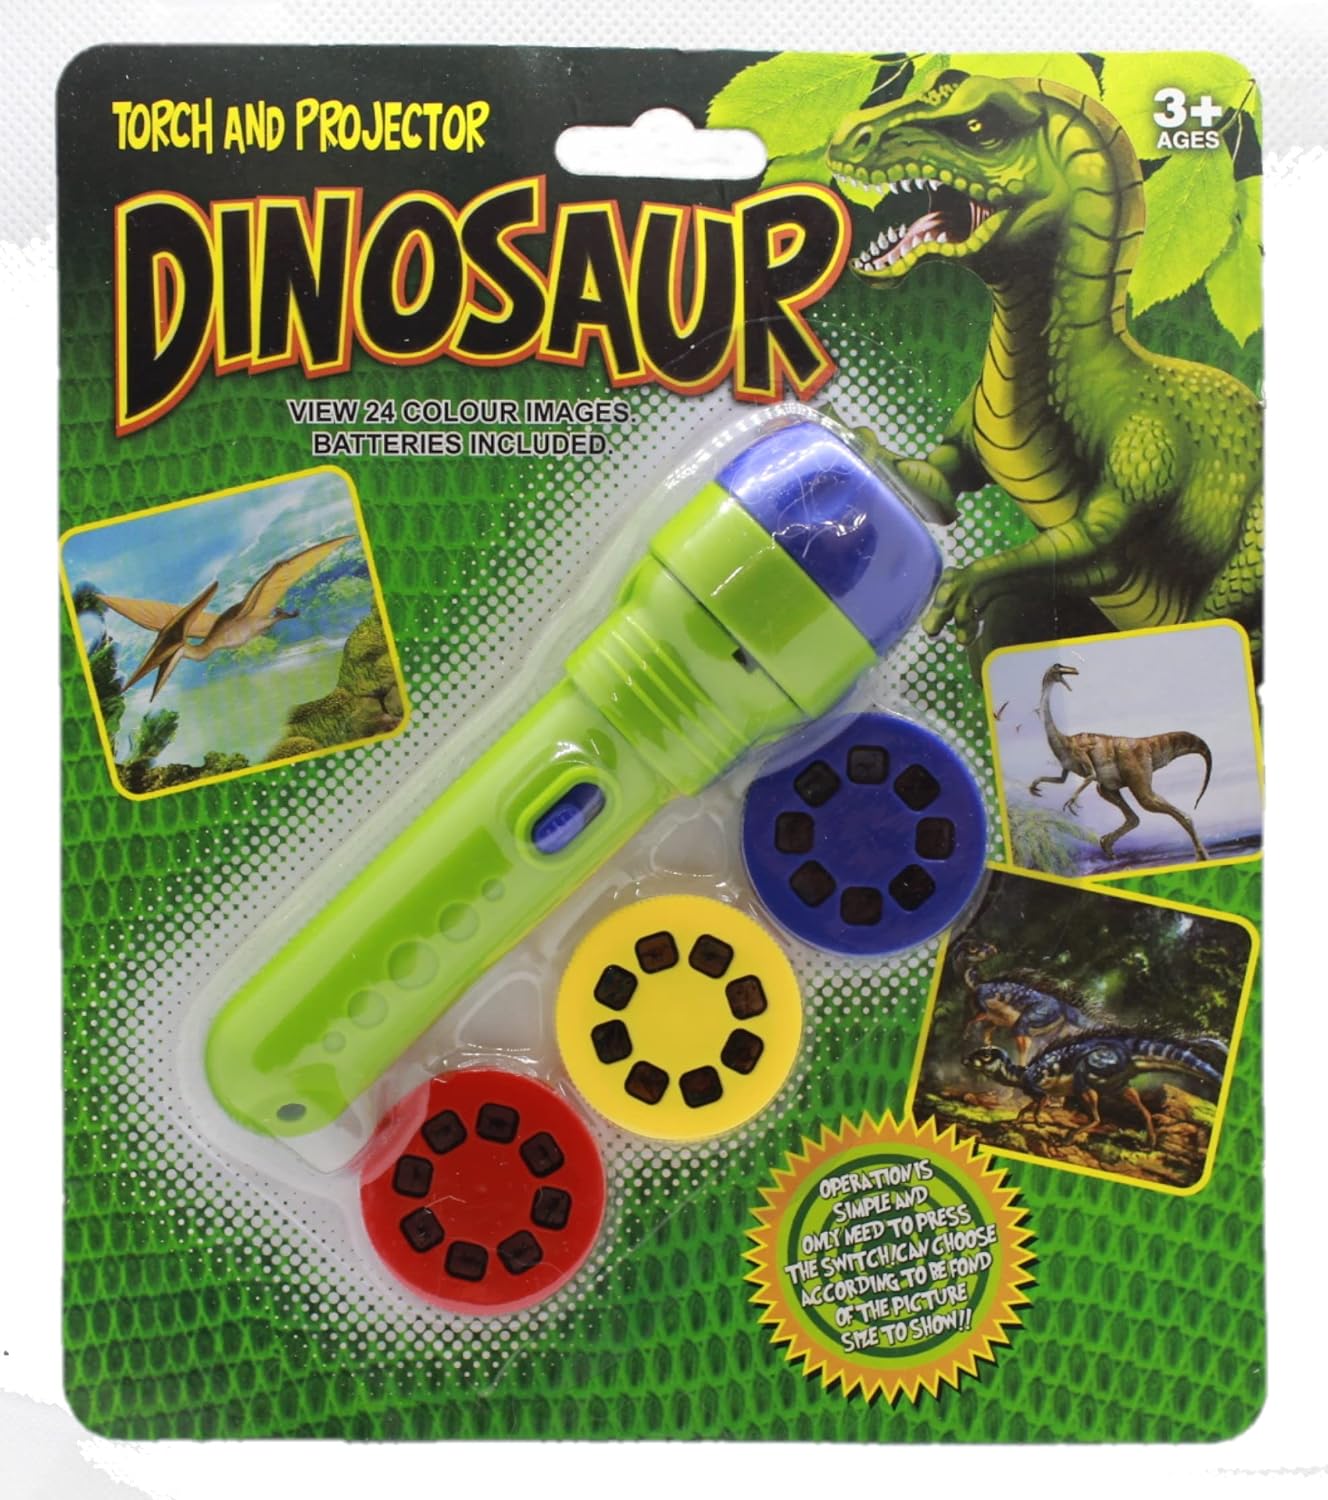 Linterna infantil con proyector de oso de color con 48 patrones, incluye  dinosaurios, vehículos, animales, proyector de aprendizaje educativo de 26